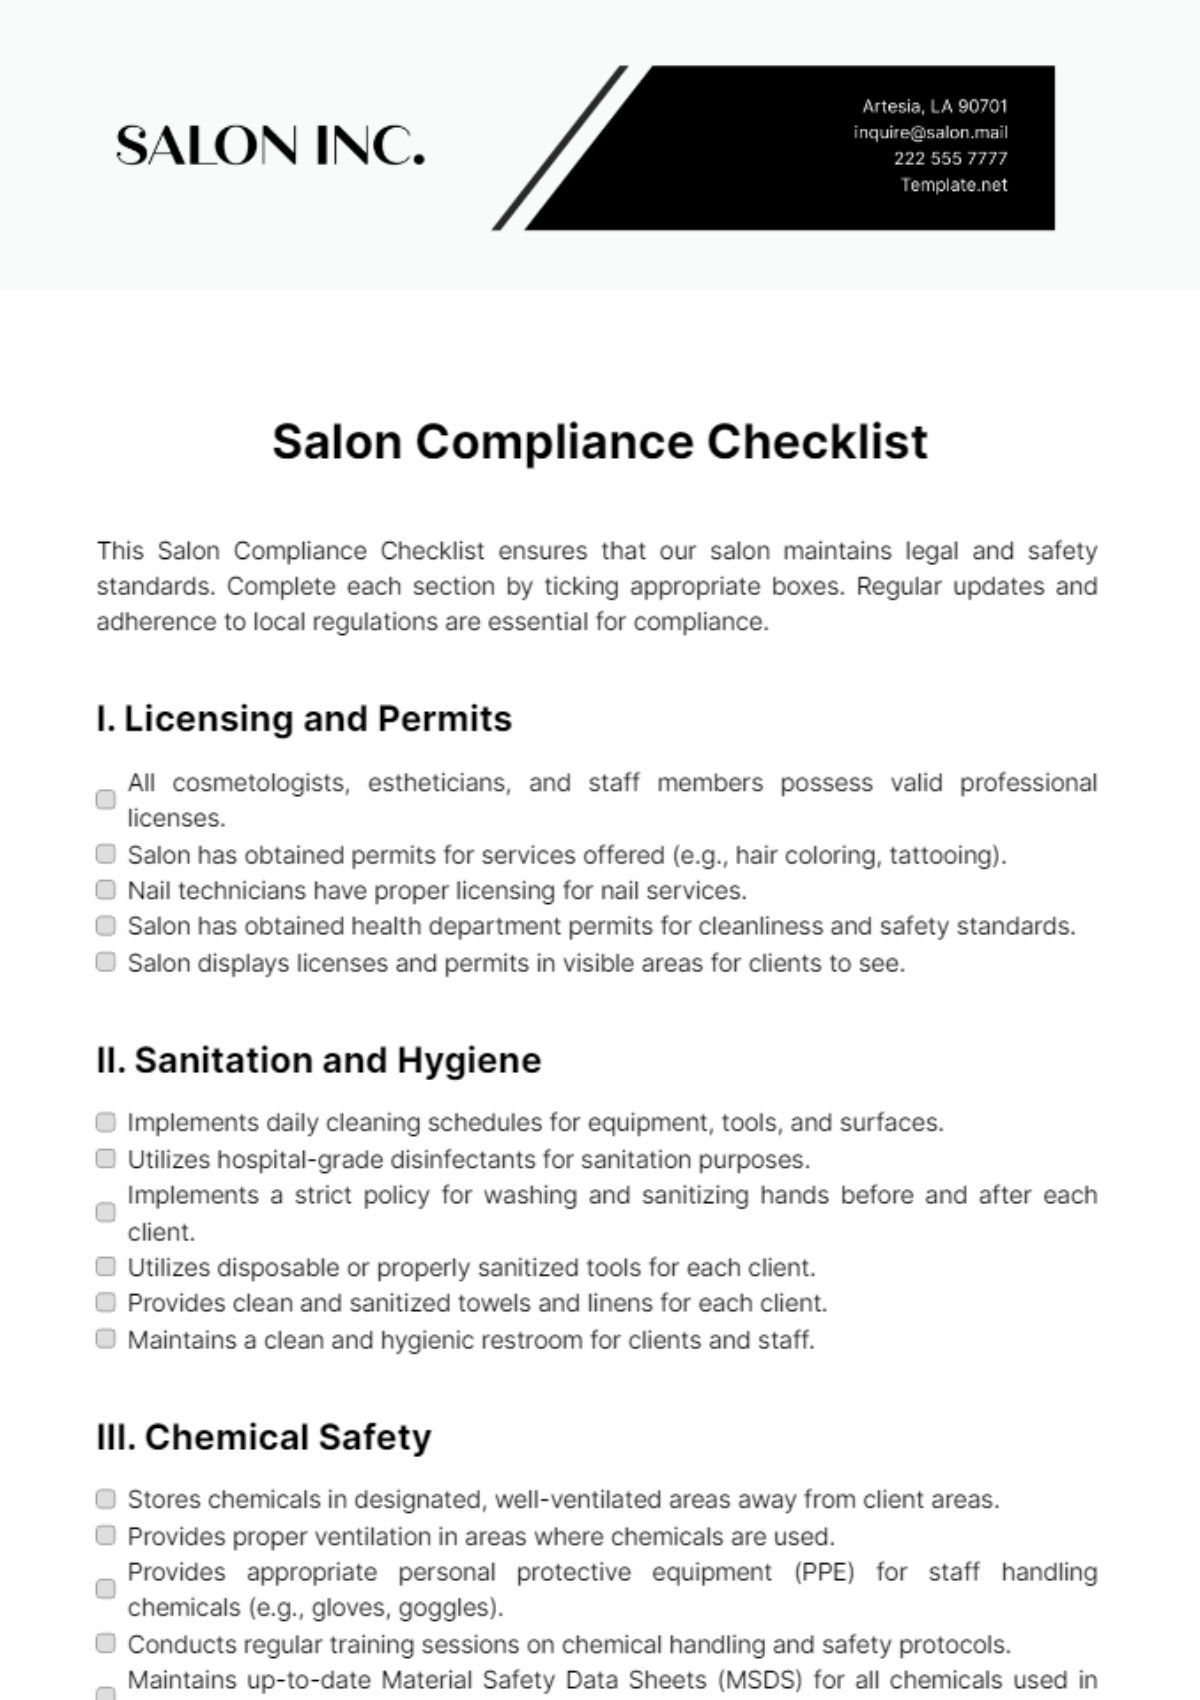 Salon Compliance Checklist Template